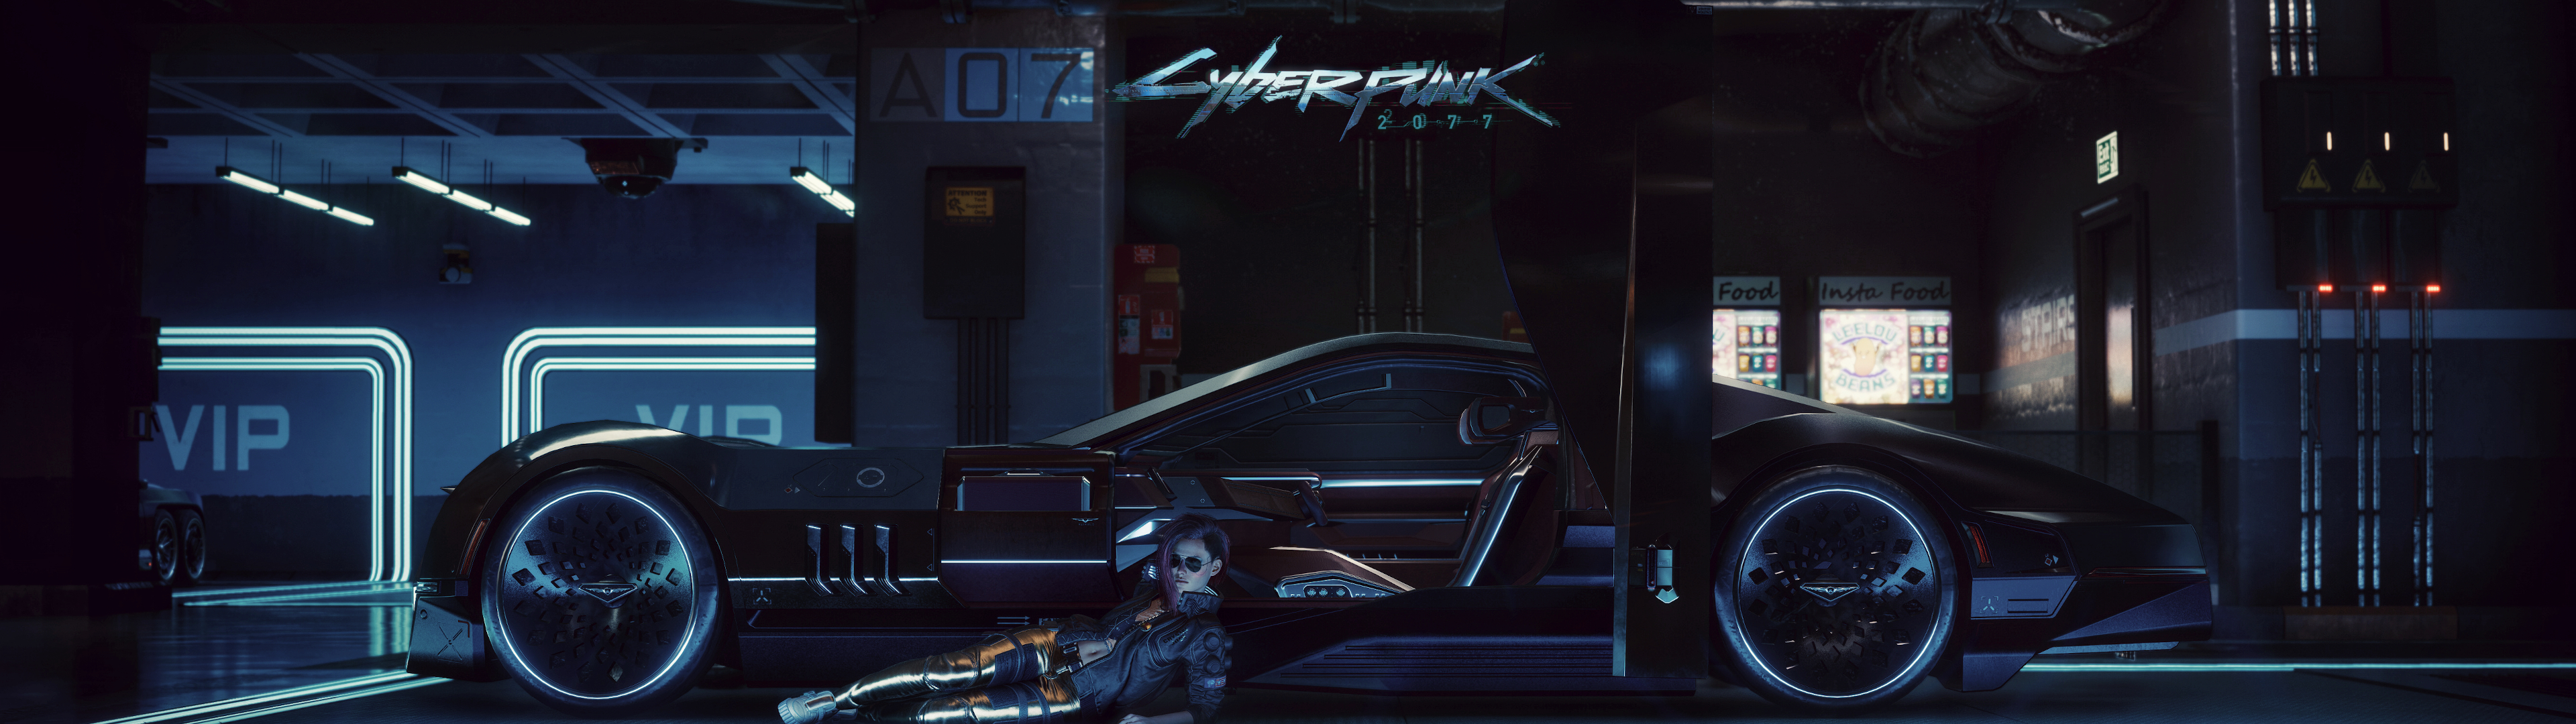 Cyberpunk 2077 đã trở thành chủ đề nóng và thu hút sự quan tâm của đông đảo game thủ toàn cầu. Và giờ đây, bạn đã có thể sử dụng hình nền Cyberpunk 2077 đẹp mắt này để tạo nên không khí thú vị và tương tác với vũ trụ Cyberpunk đầy mê hoặc rồi đấy!